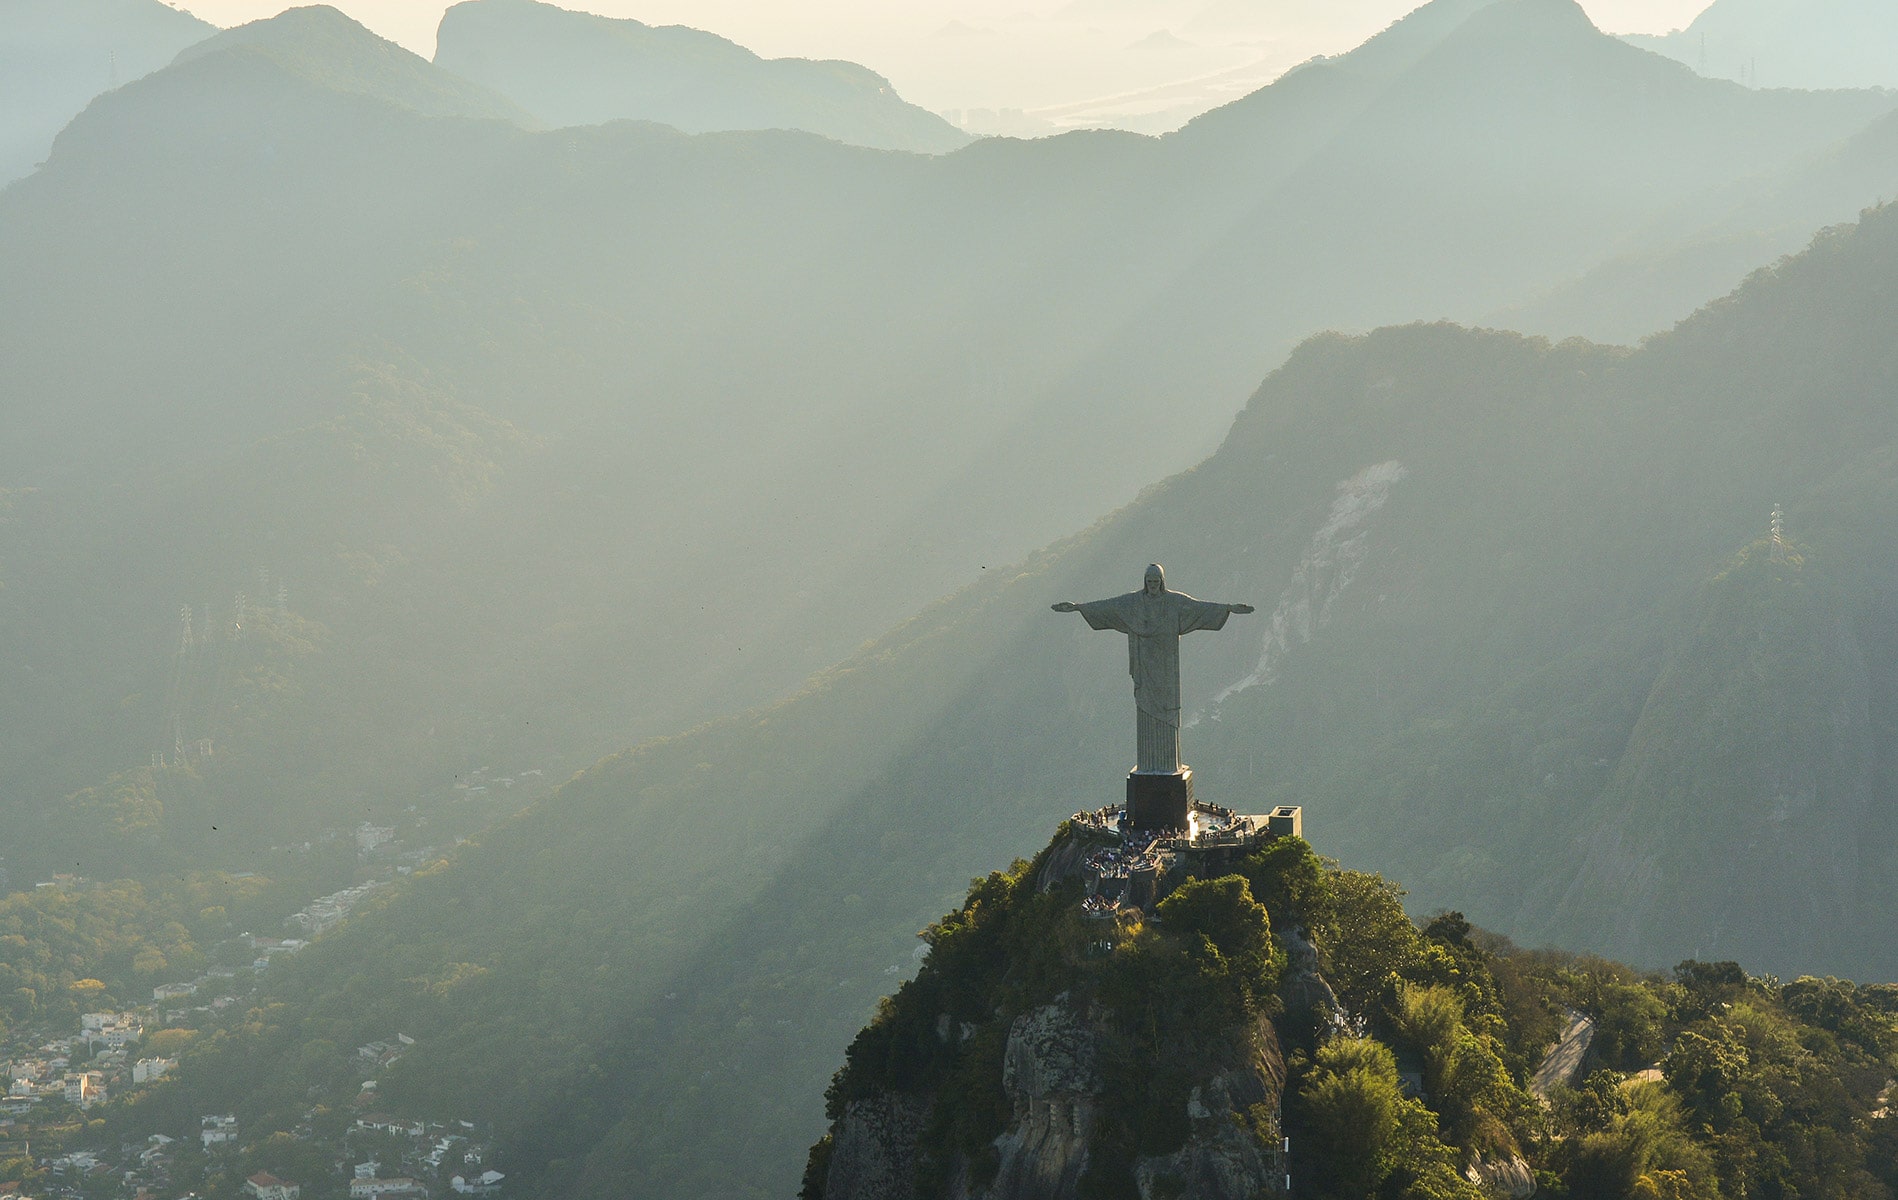 Достопримечательности Рио-де-Жанейро